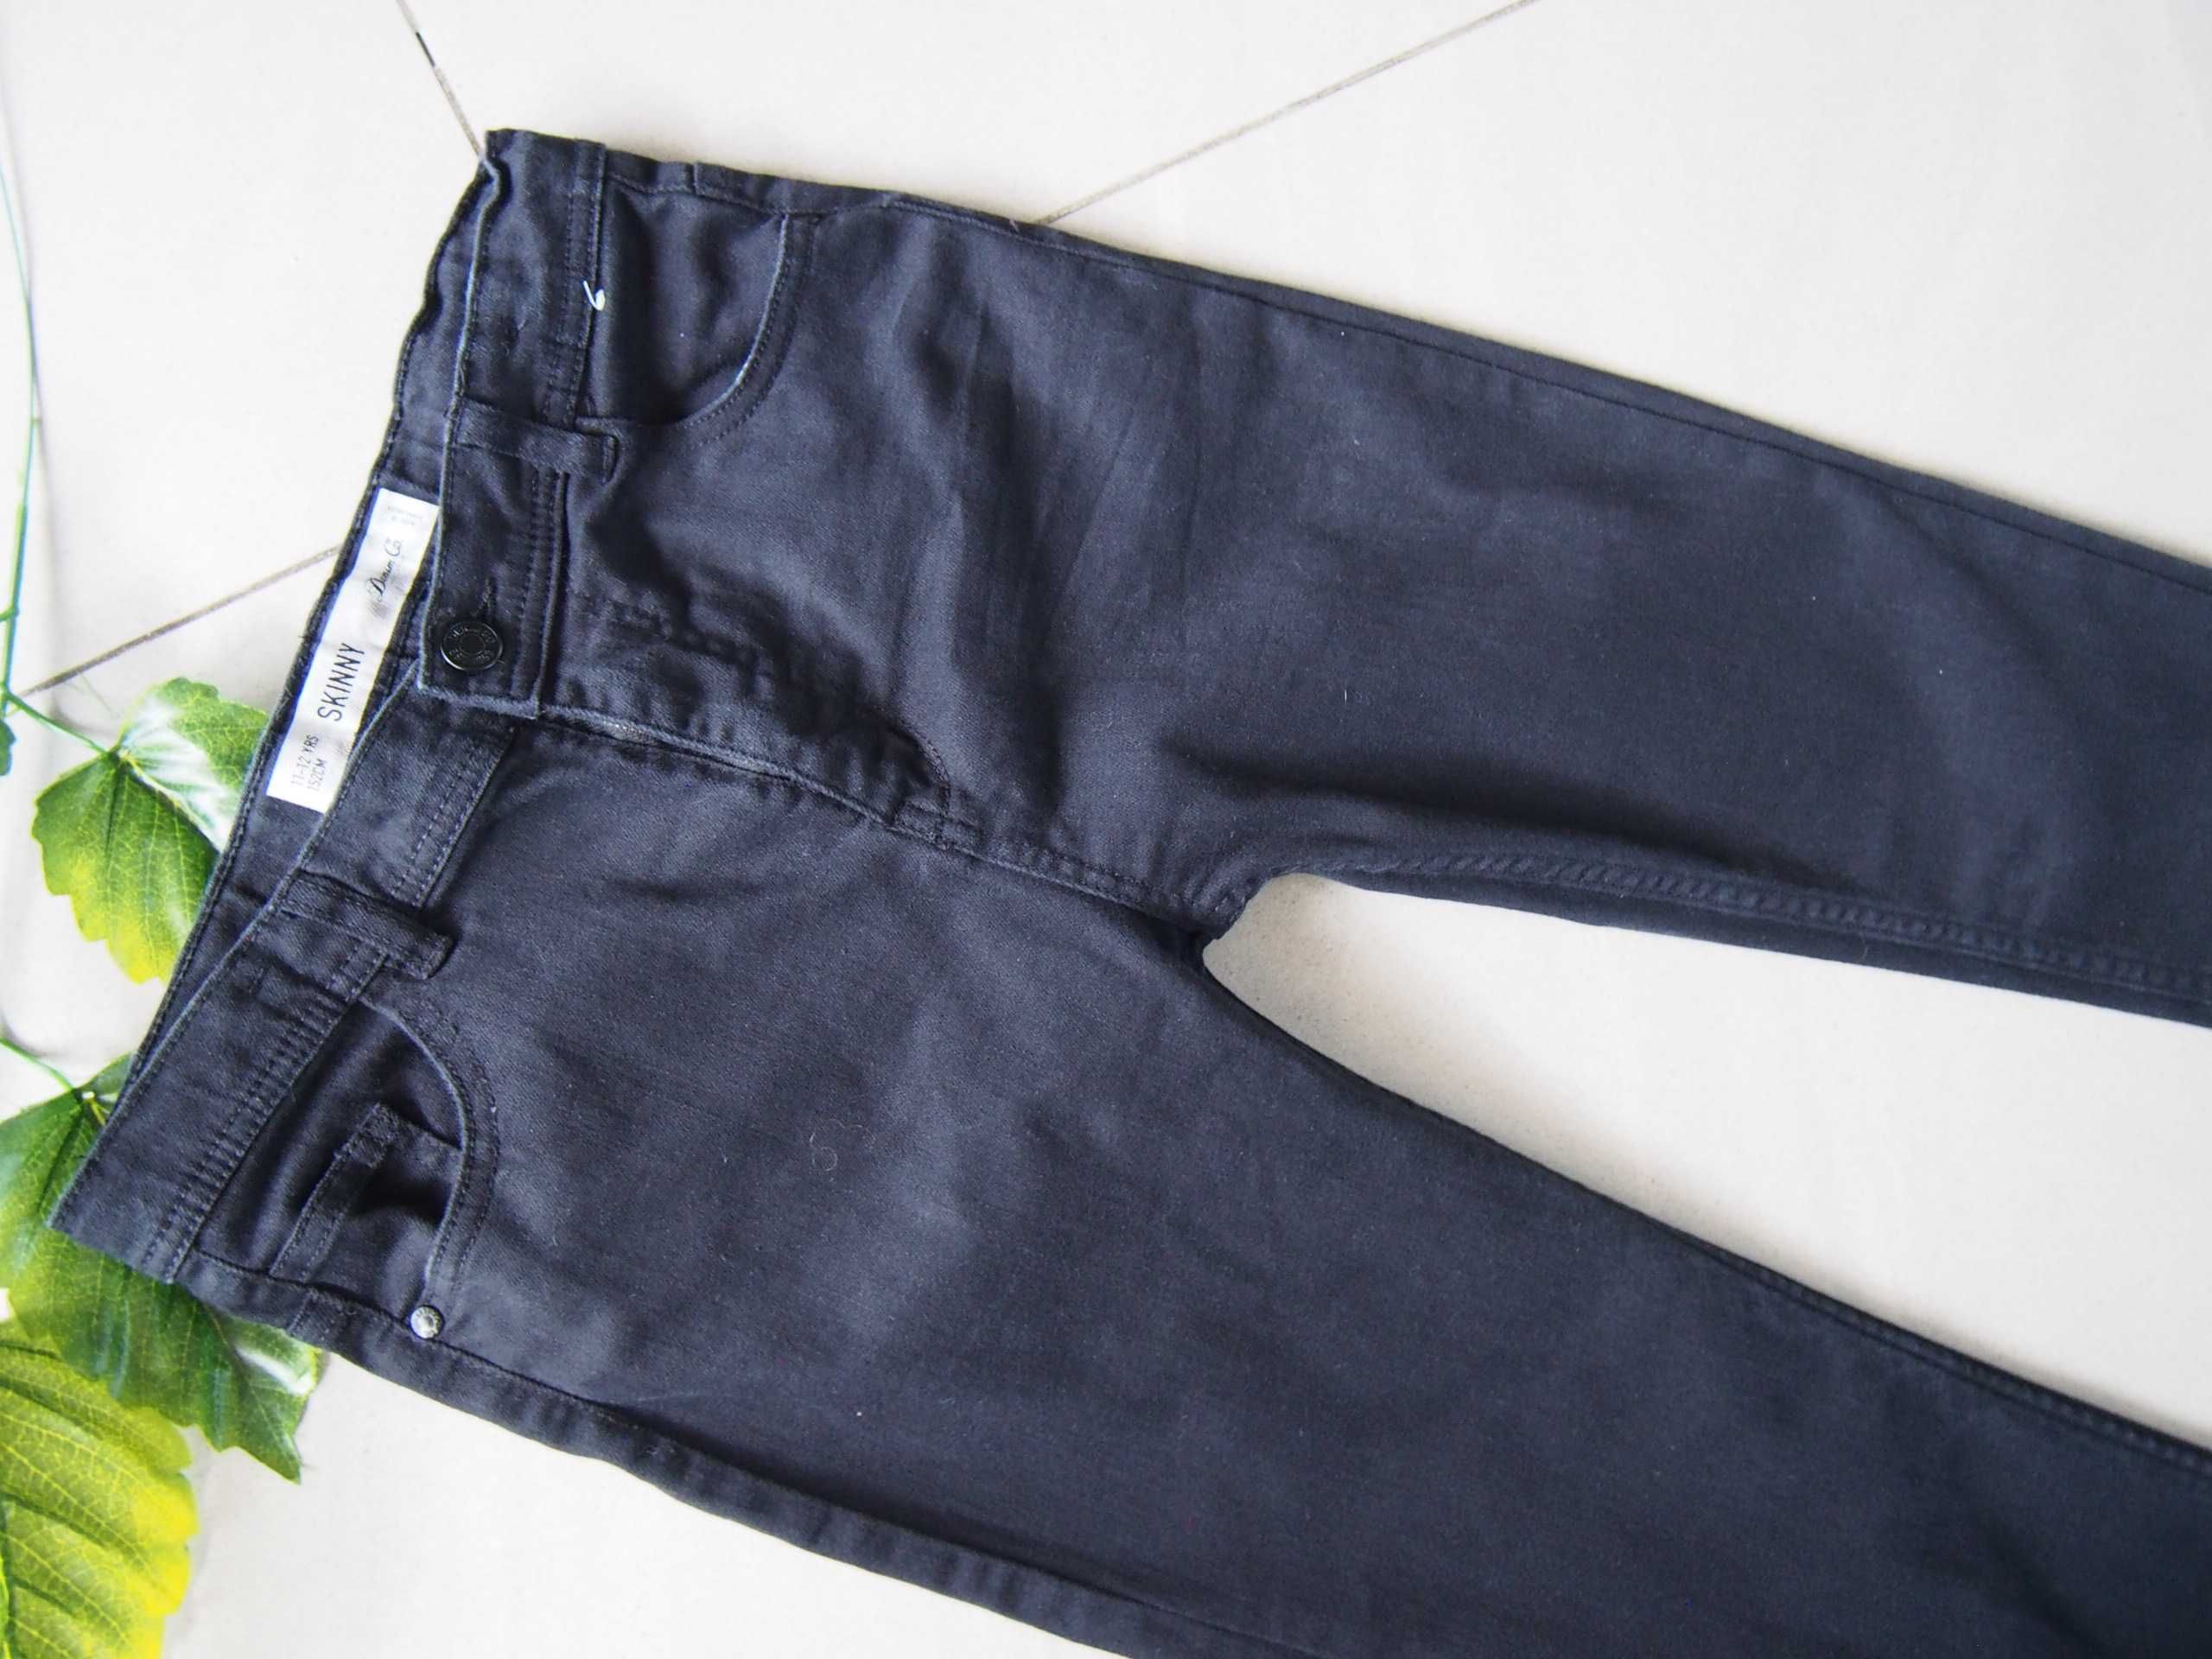 Spodnie czarne jeansowe 152 cm Skinny